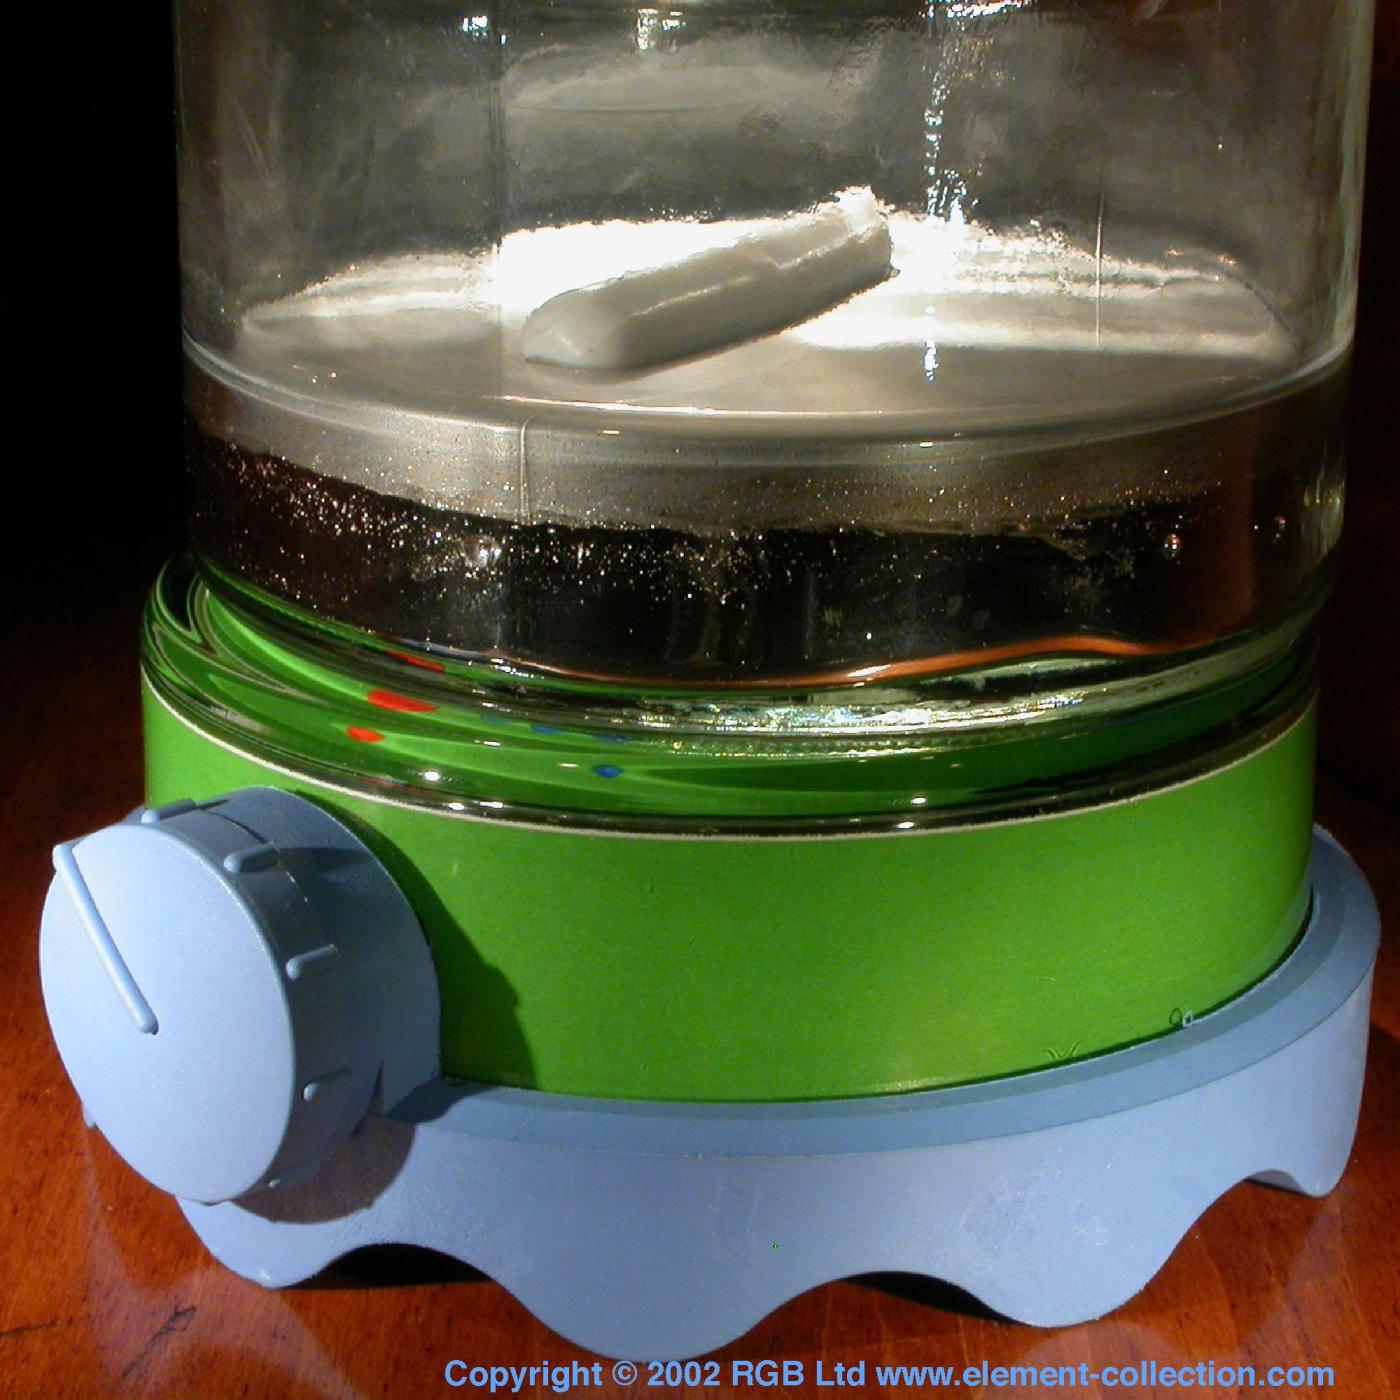  Jar with magnetic stirrer